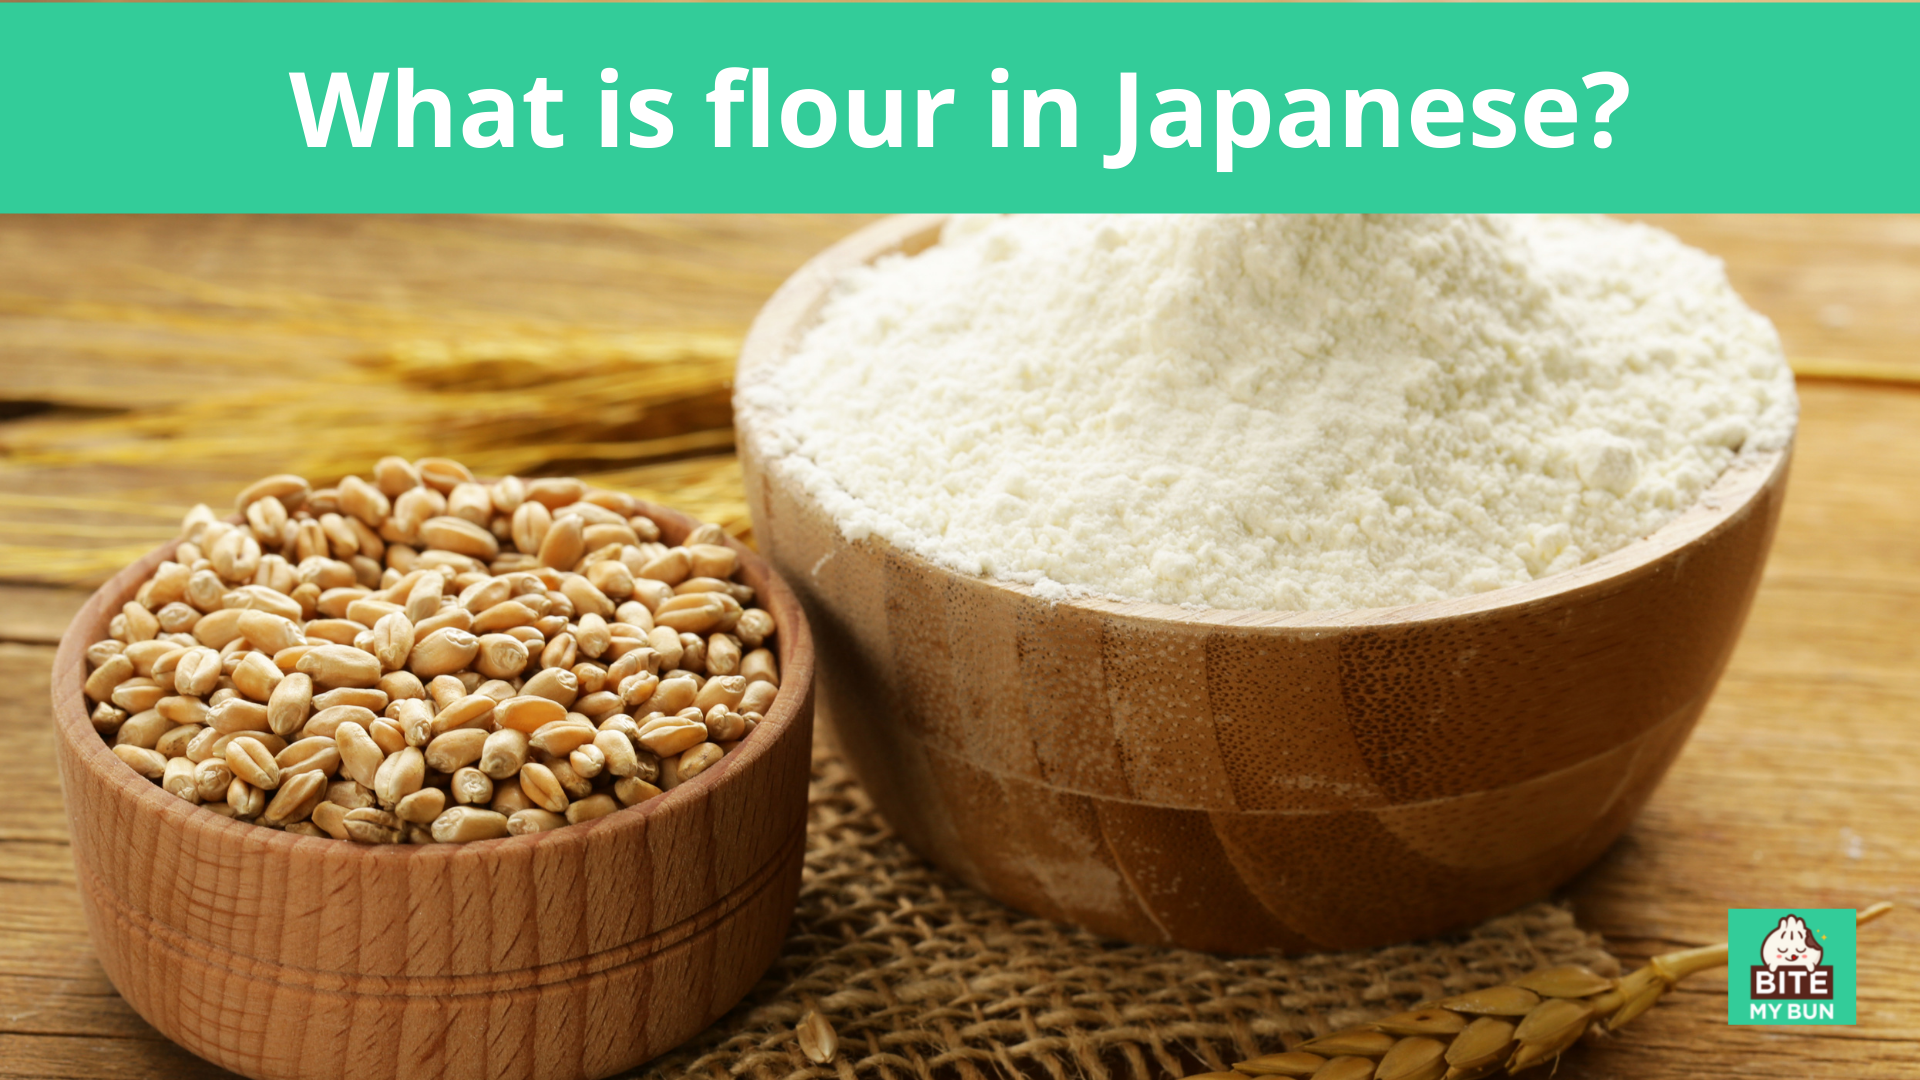 日本語で小麦粉とは何ですか？ すべての異なる名前（komugiko、chûrikiko、hakurikiko）が説明しました